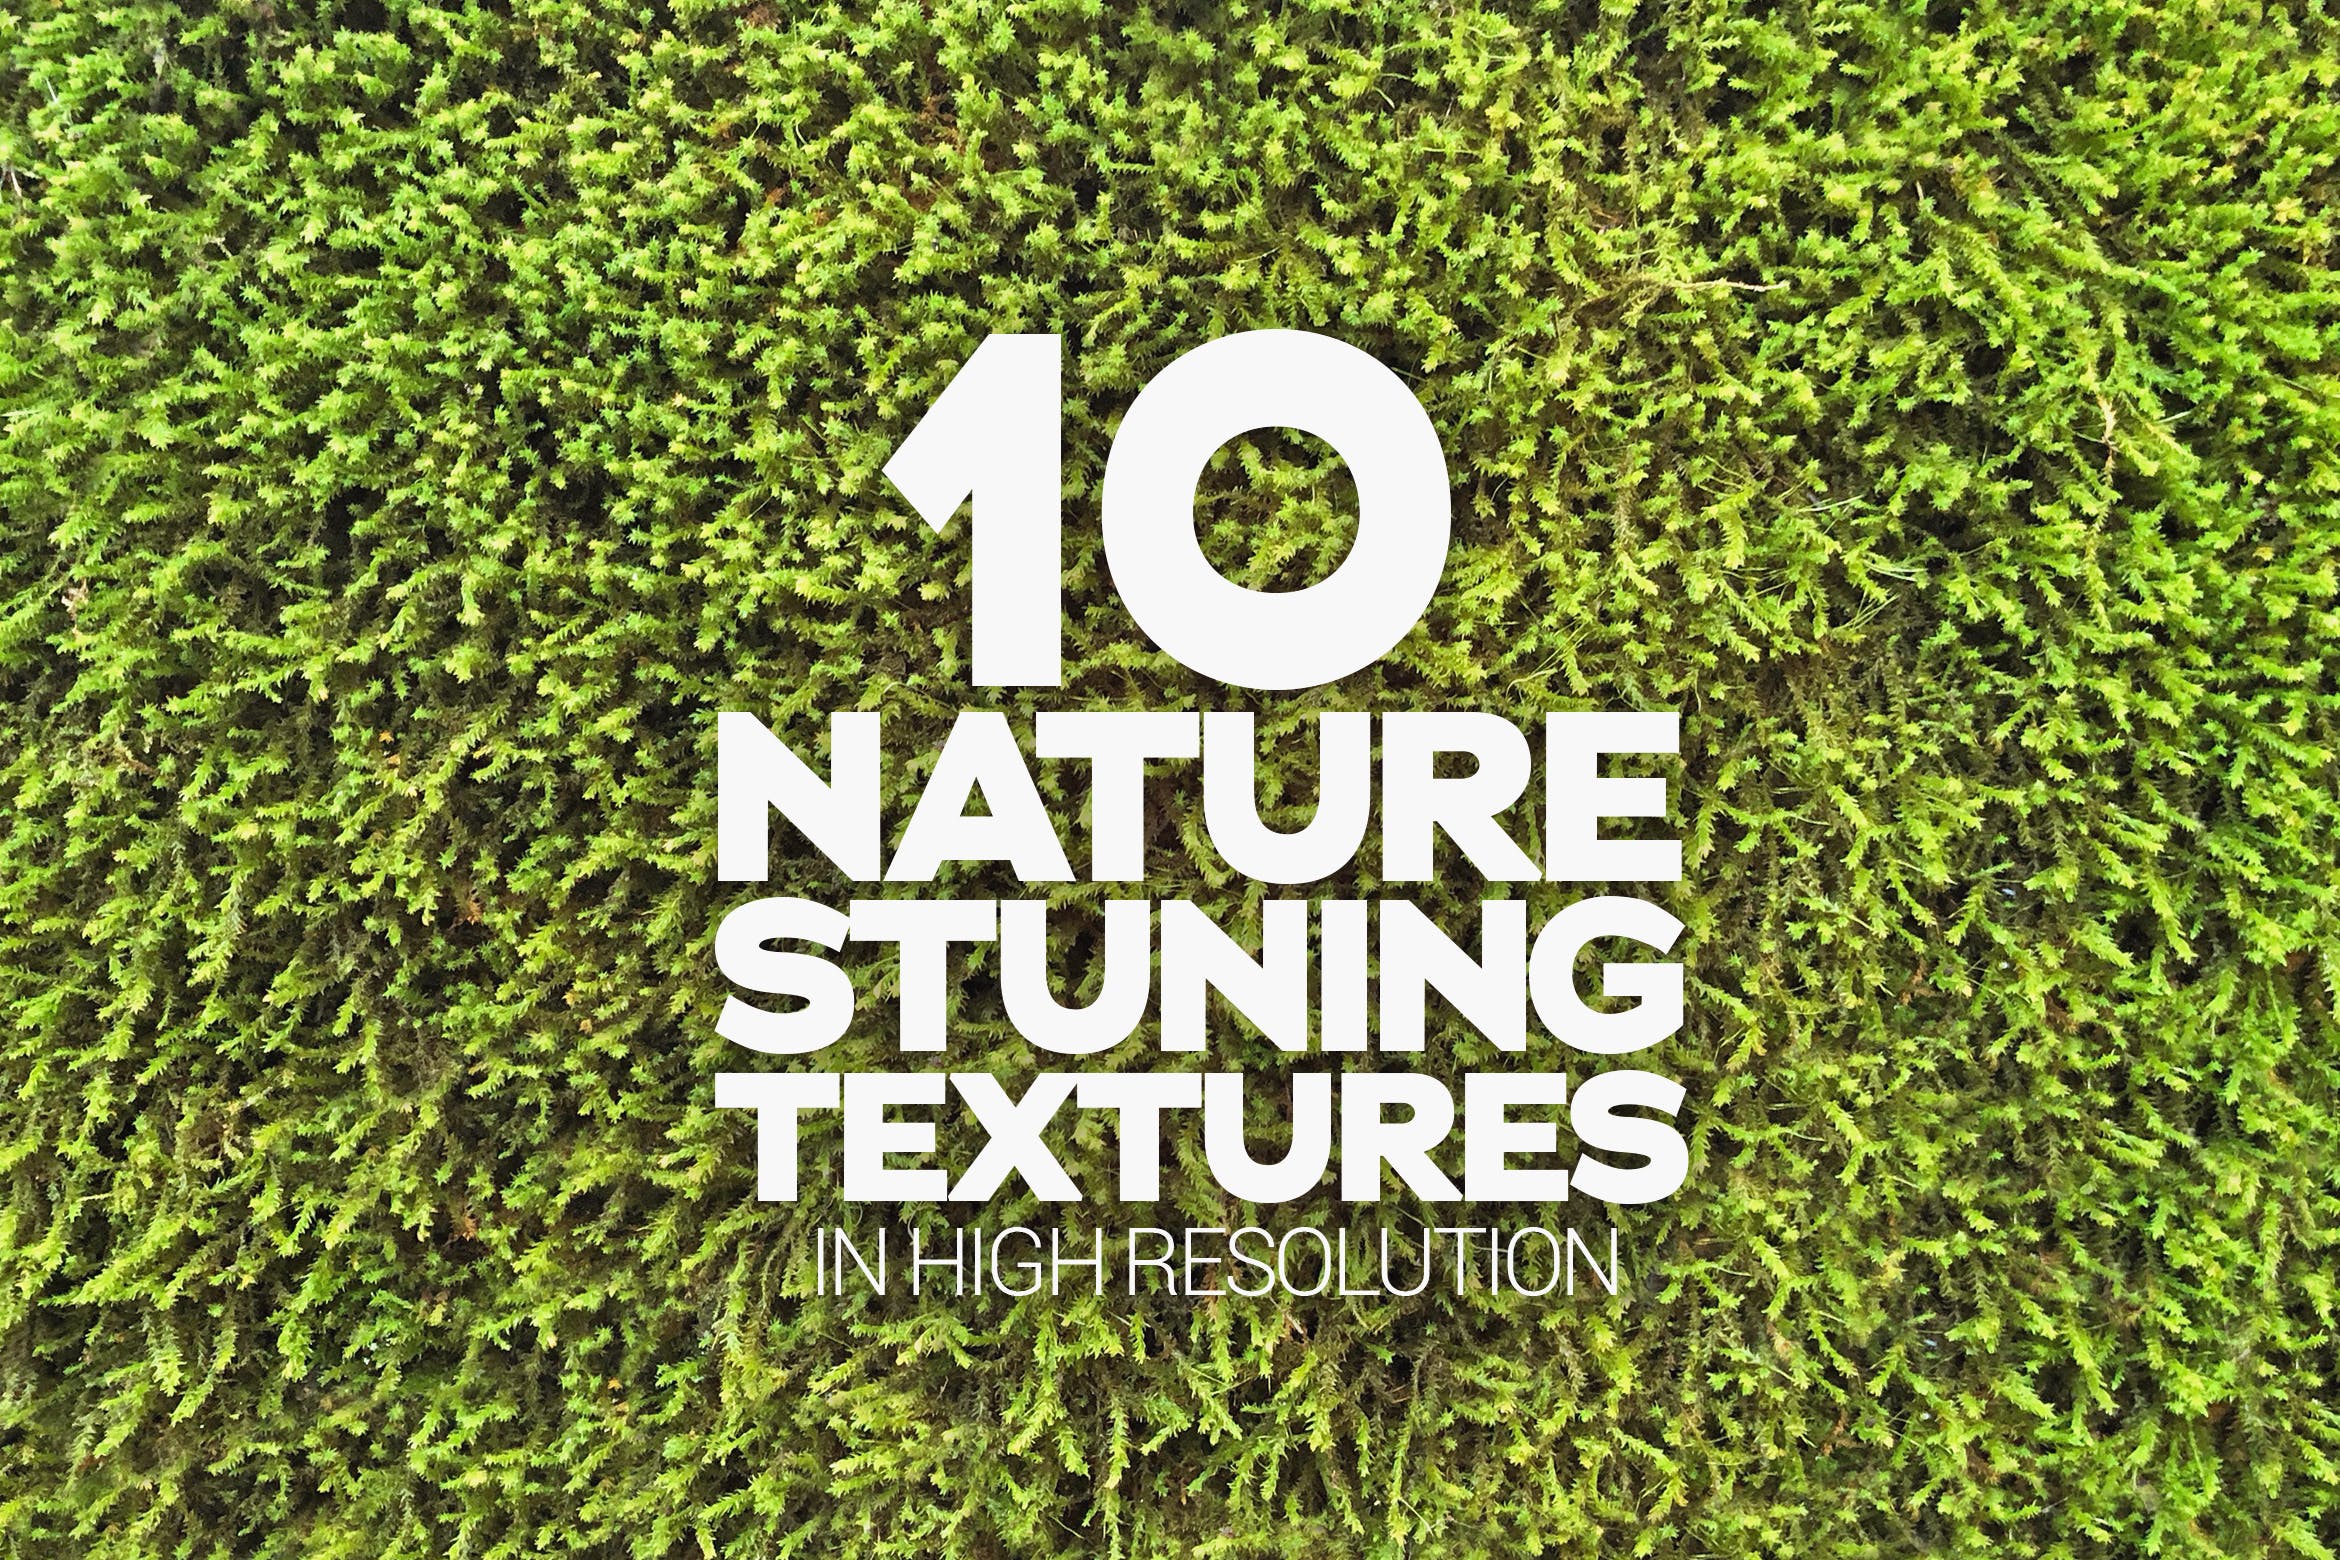 10张绿植高清背景图片素材 Nature Stuning Textures x10插图